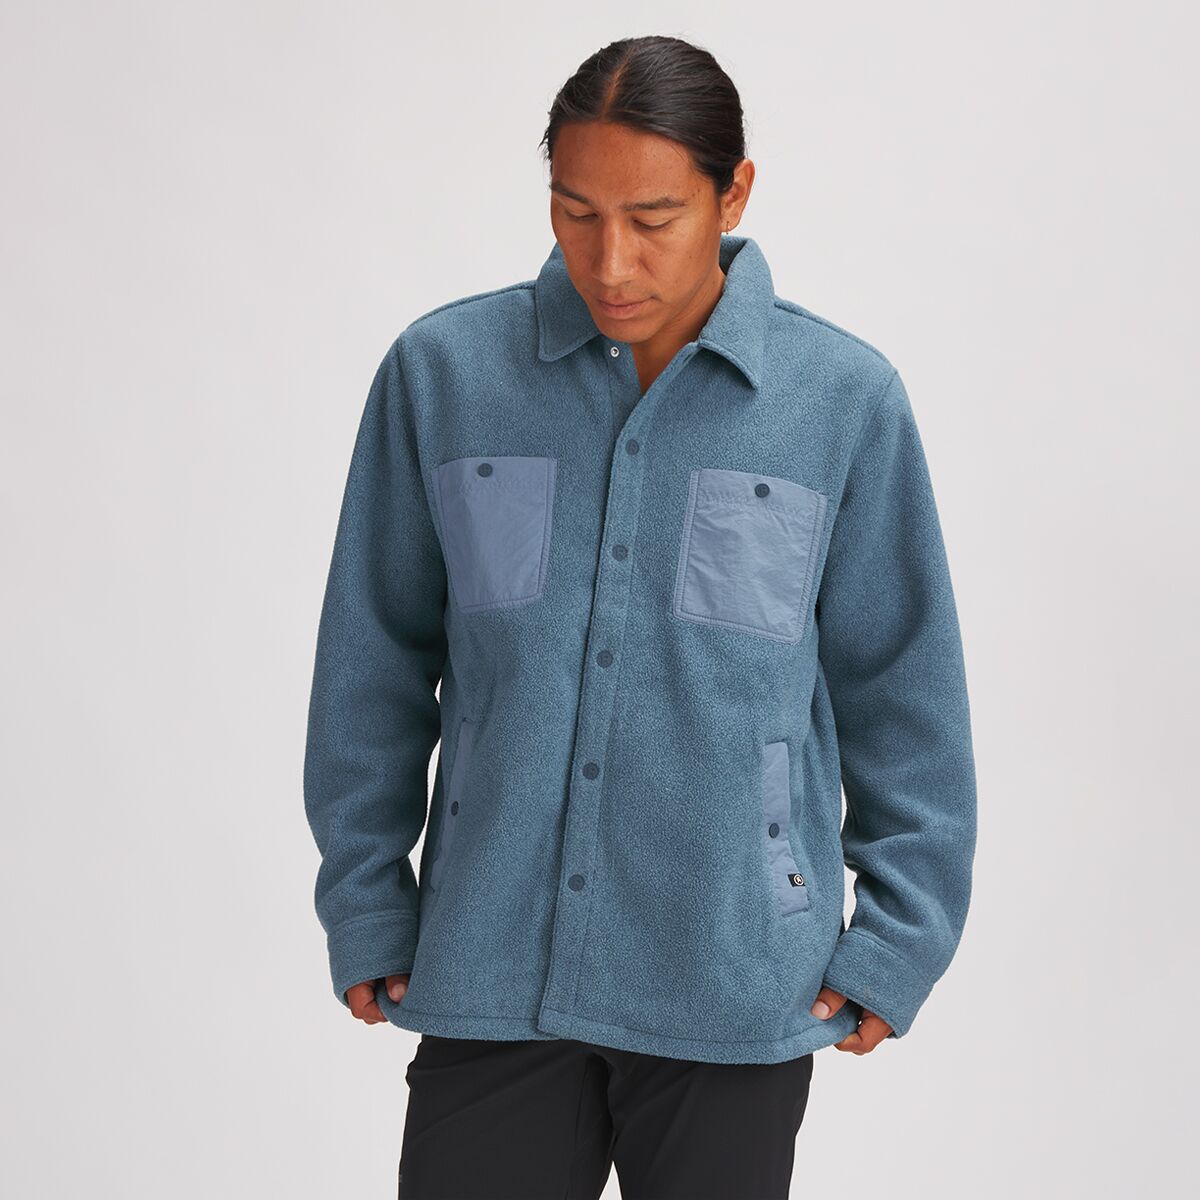 Backcountry Polar Fleece Shirt Jacket - Men's